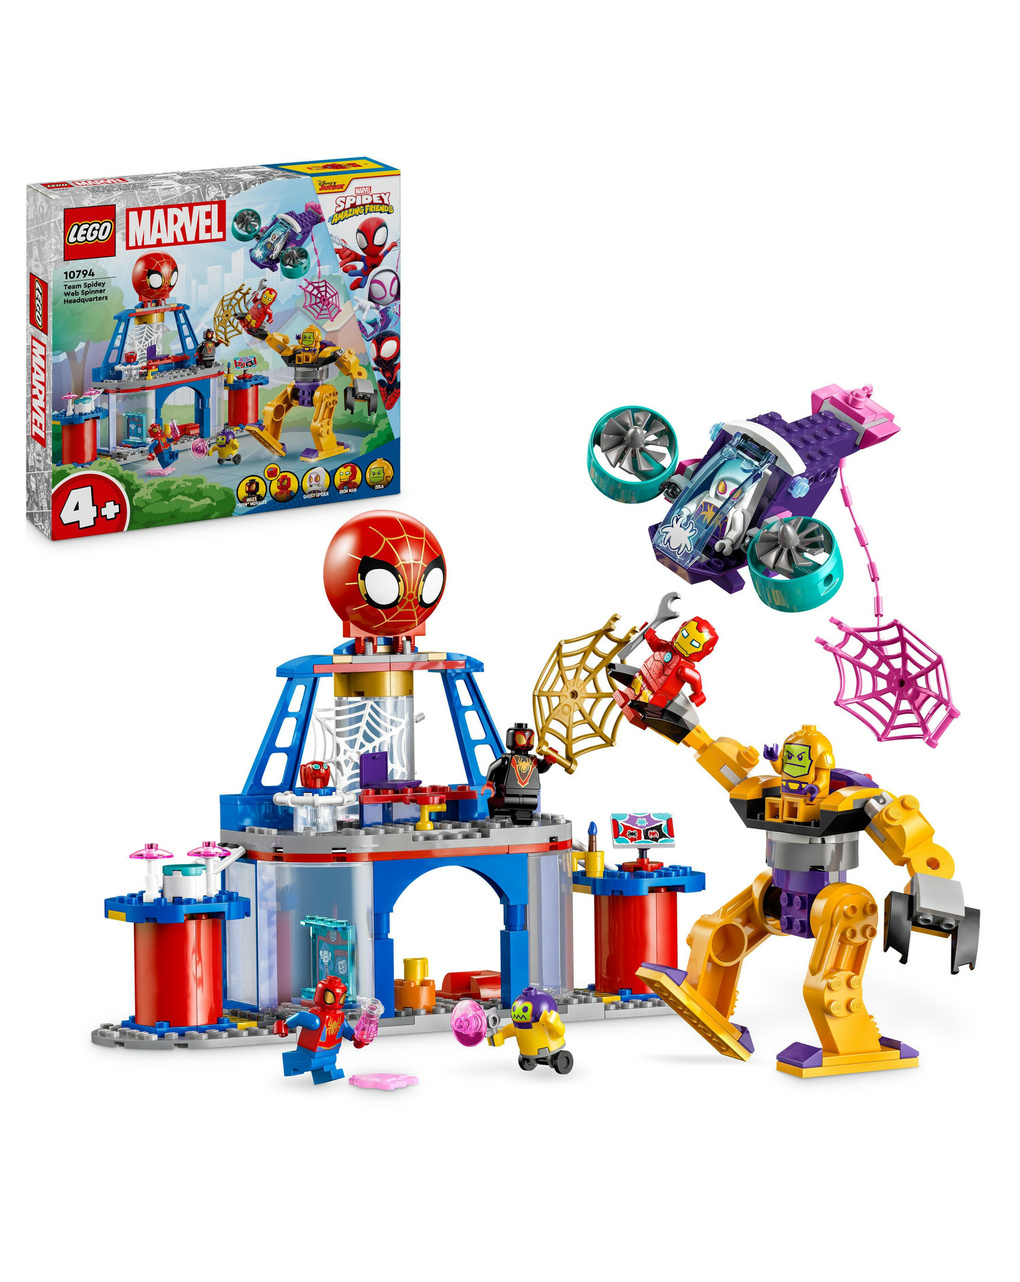 Lego spidey e i suoi fantastici amici quartier generale di team spidey - 10794 - lego